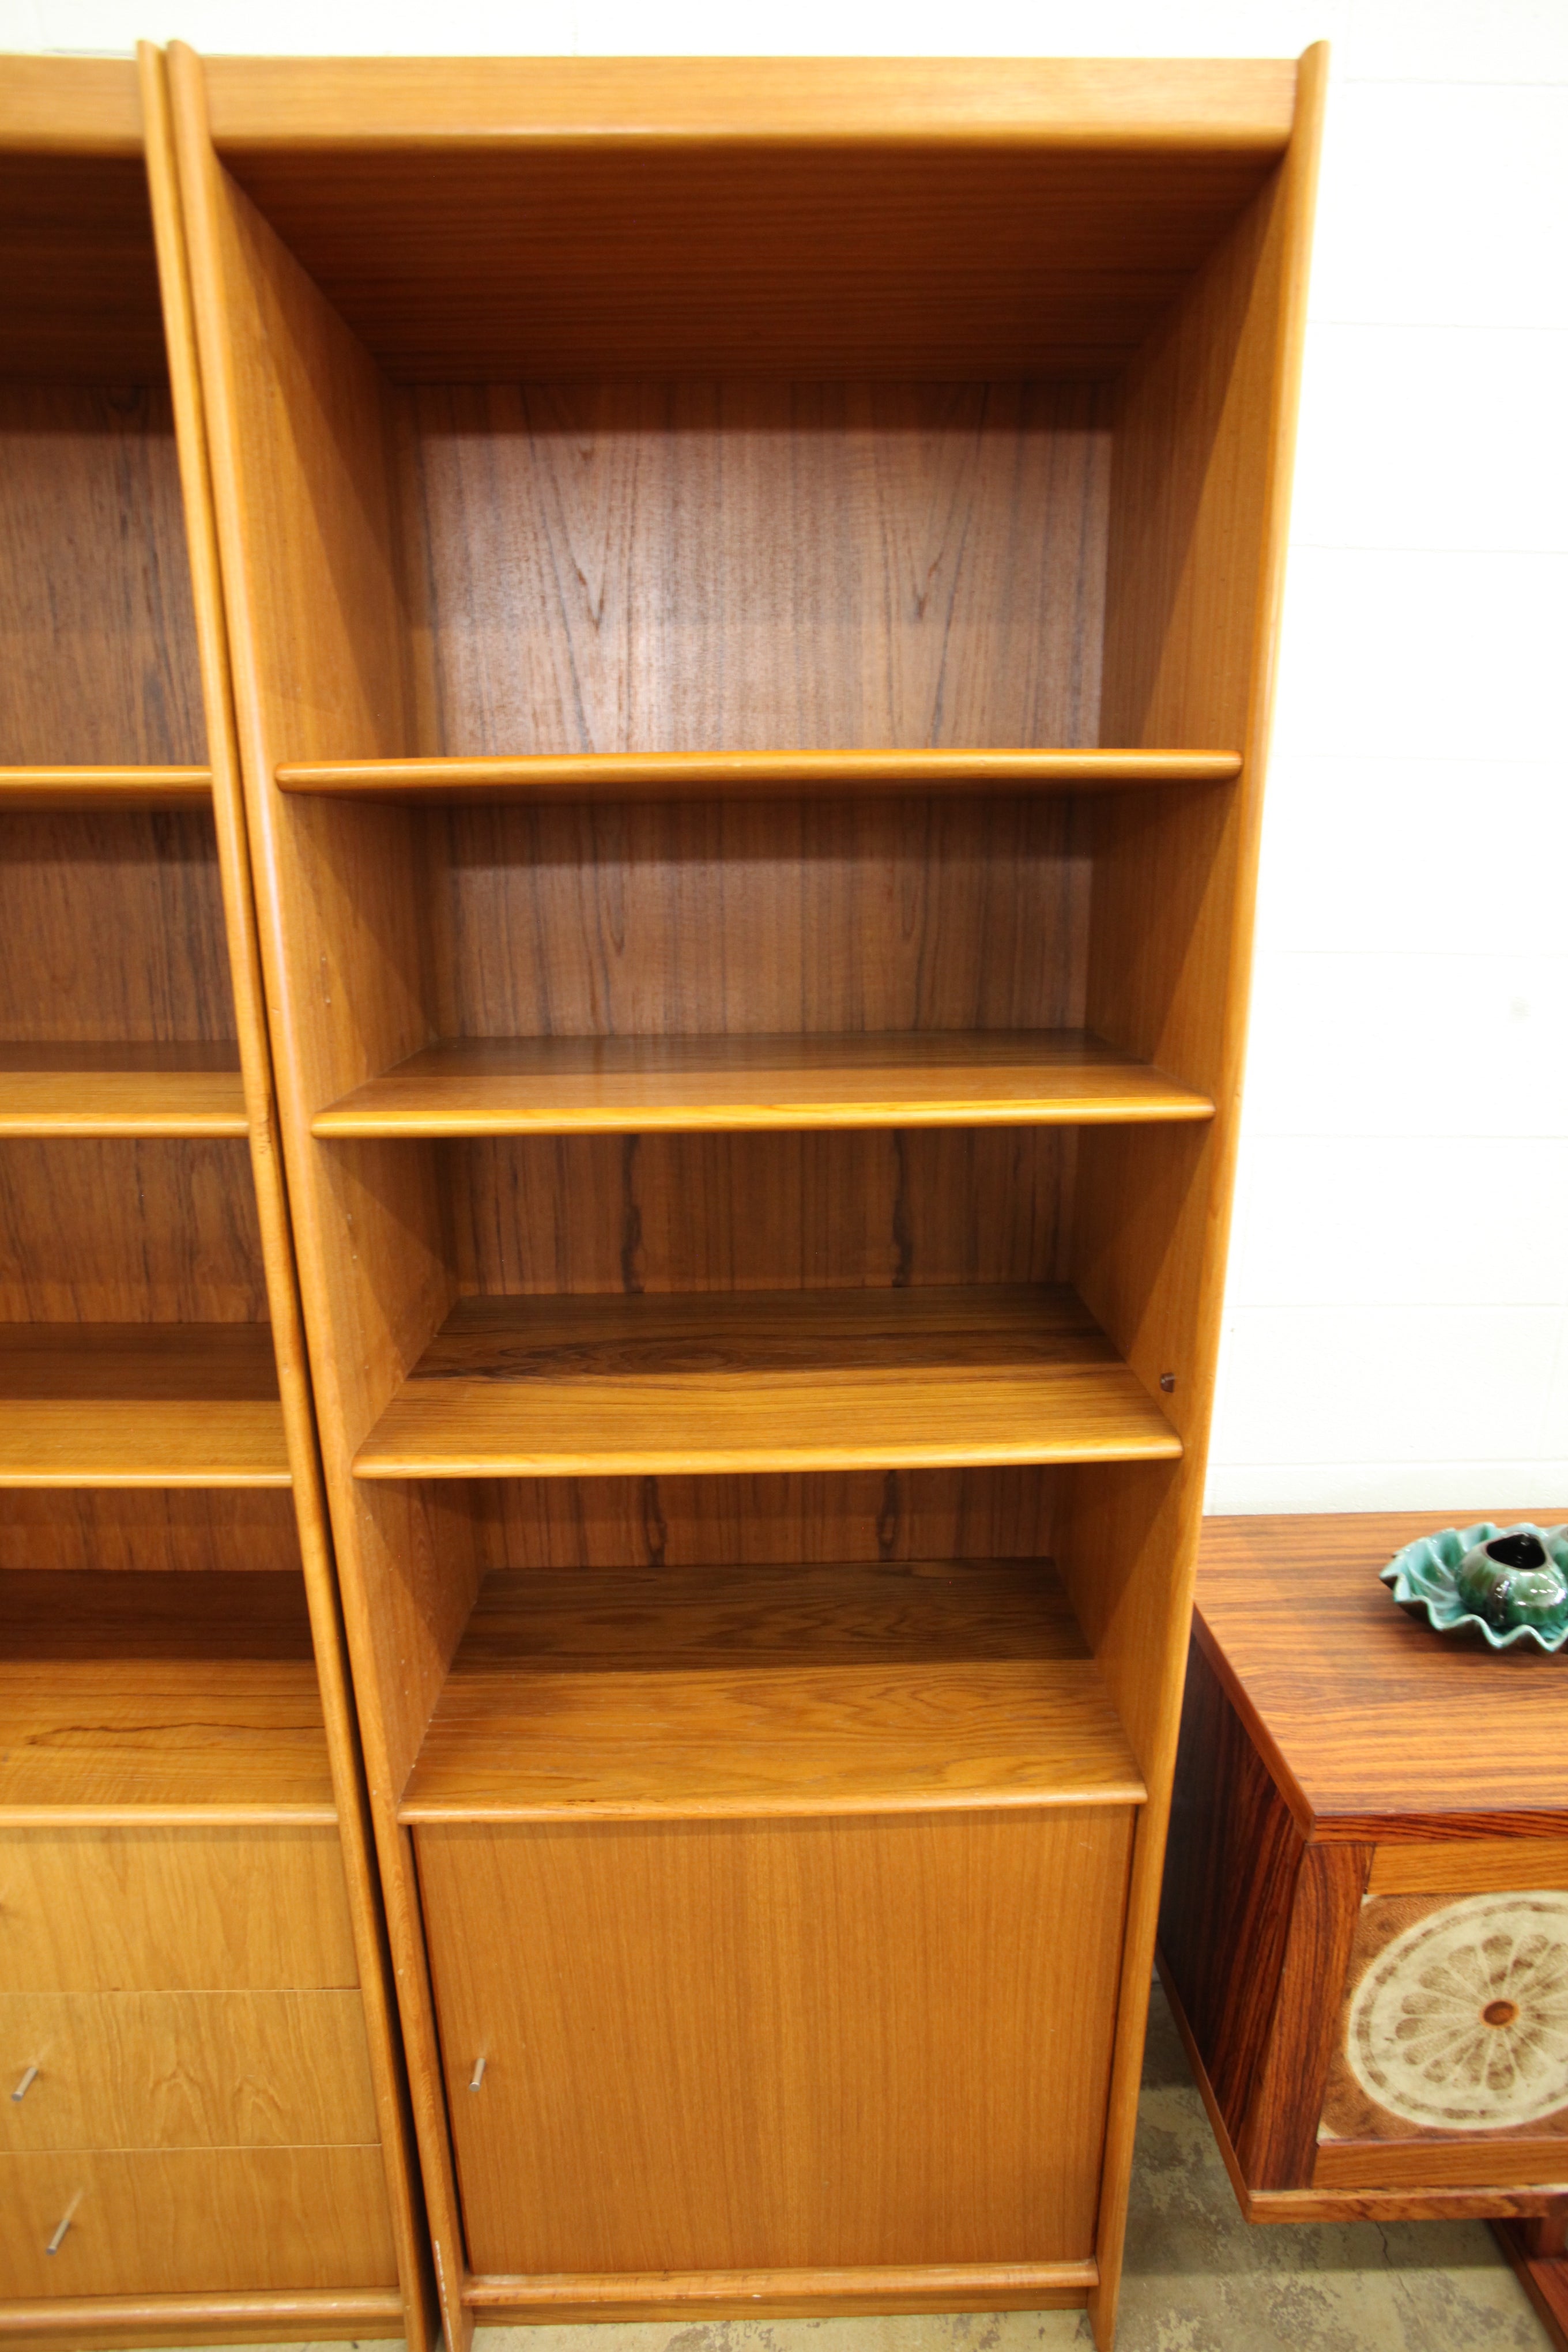 Vintage Tall Teak Bookshelf w/ lower cupboard-right opening (27.5"W x 15.75"D x 78.25"H)